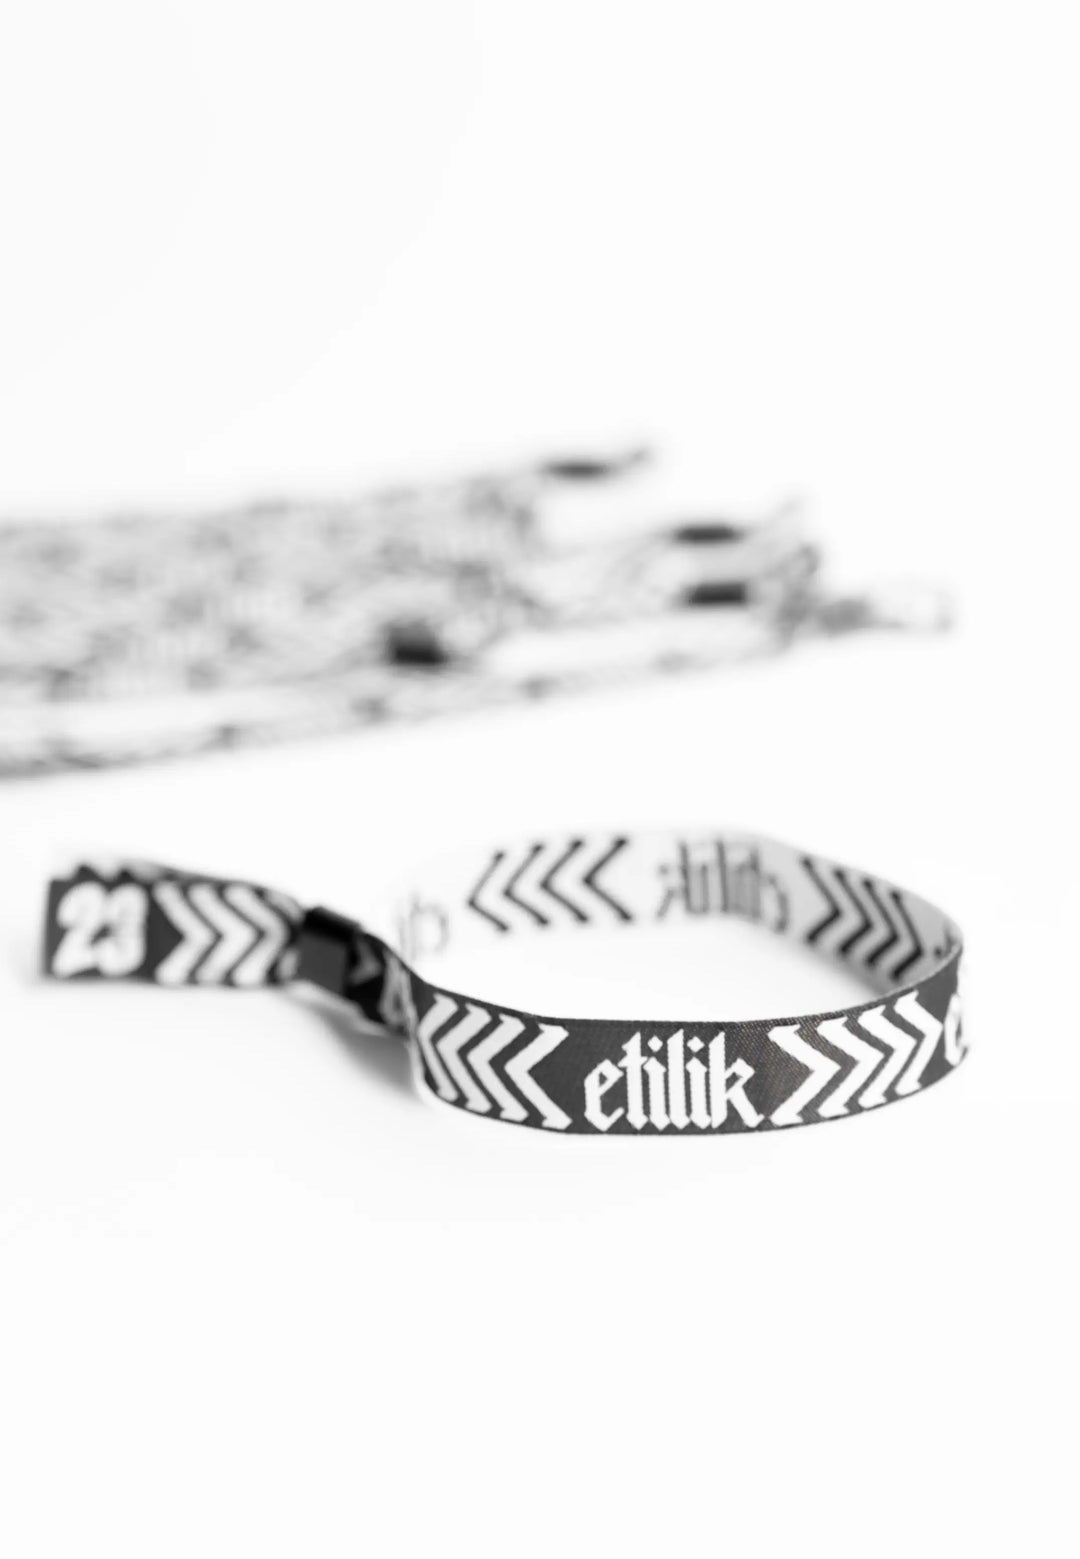 Bracelet Etilik Crew 2K24 - Etilik Wear 